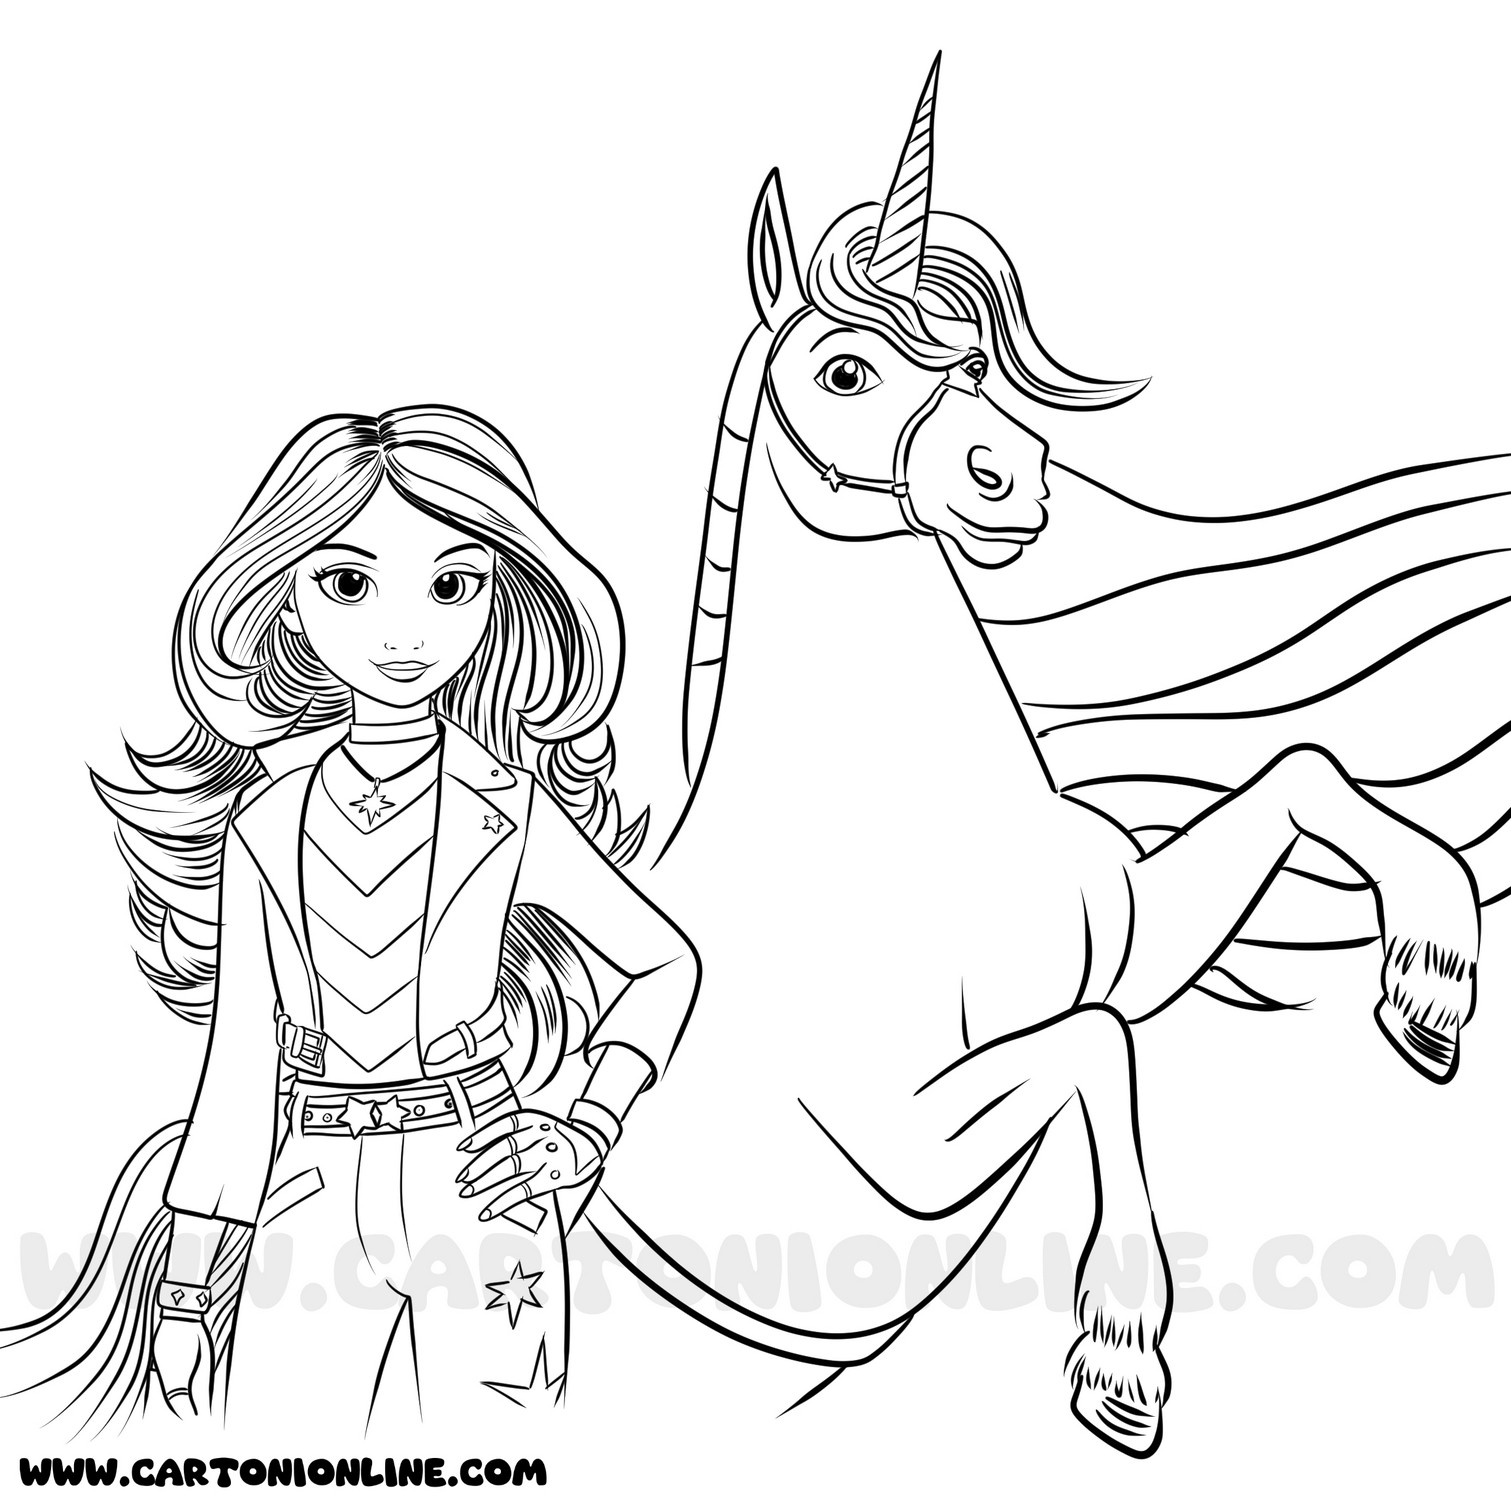 Desenho 01 de Unicorn Academy para imprimir e colorir